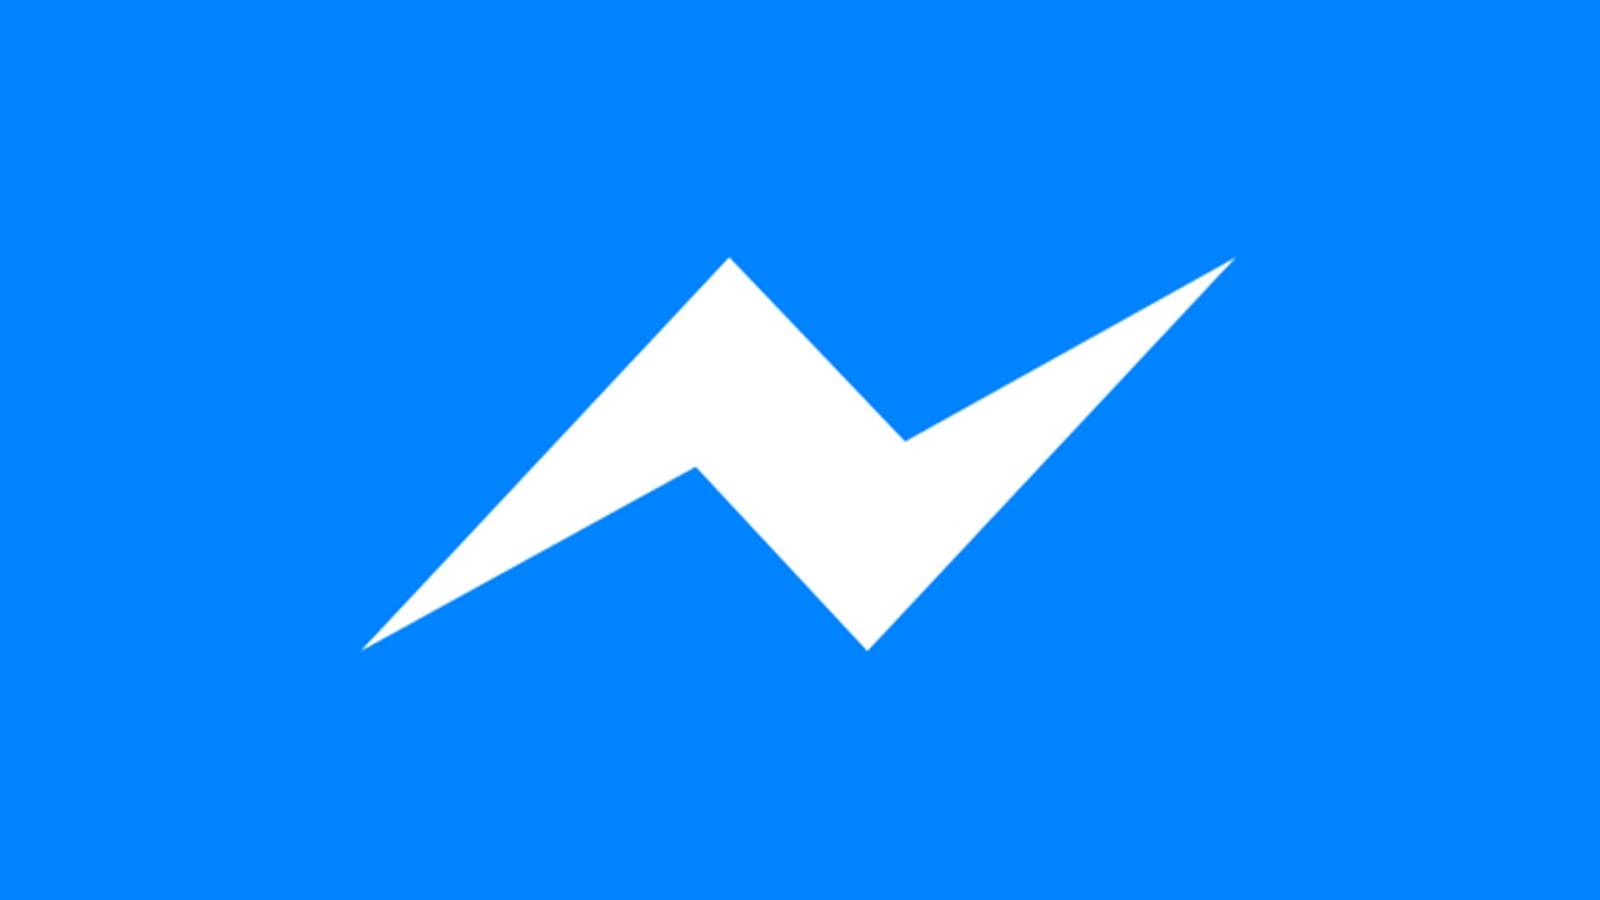 Facebook Messenger Update vine cu Noutati in Telefoane si Tablete